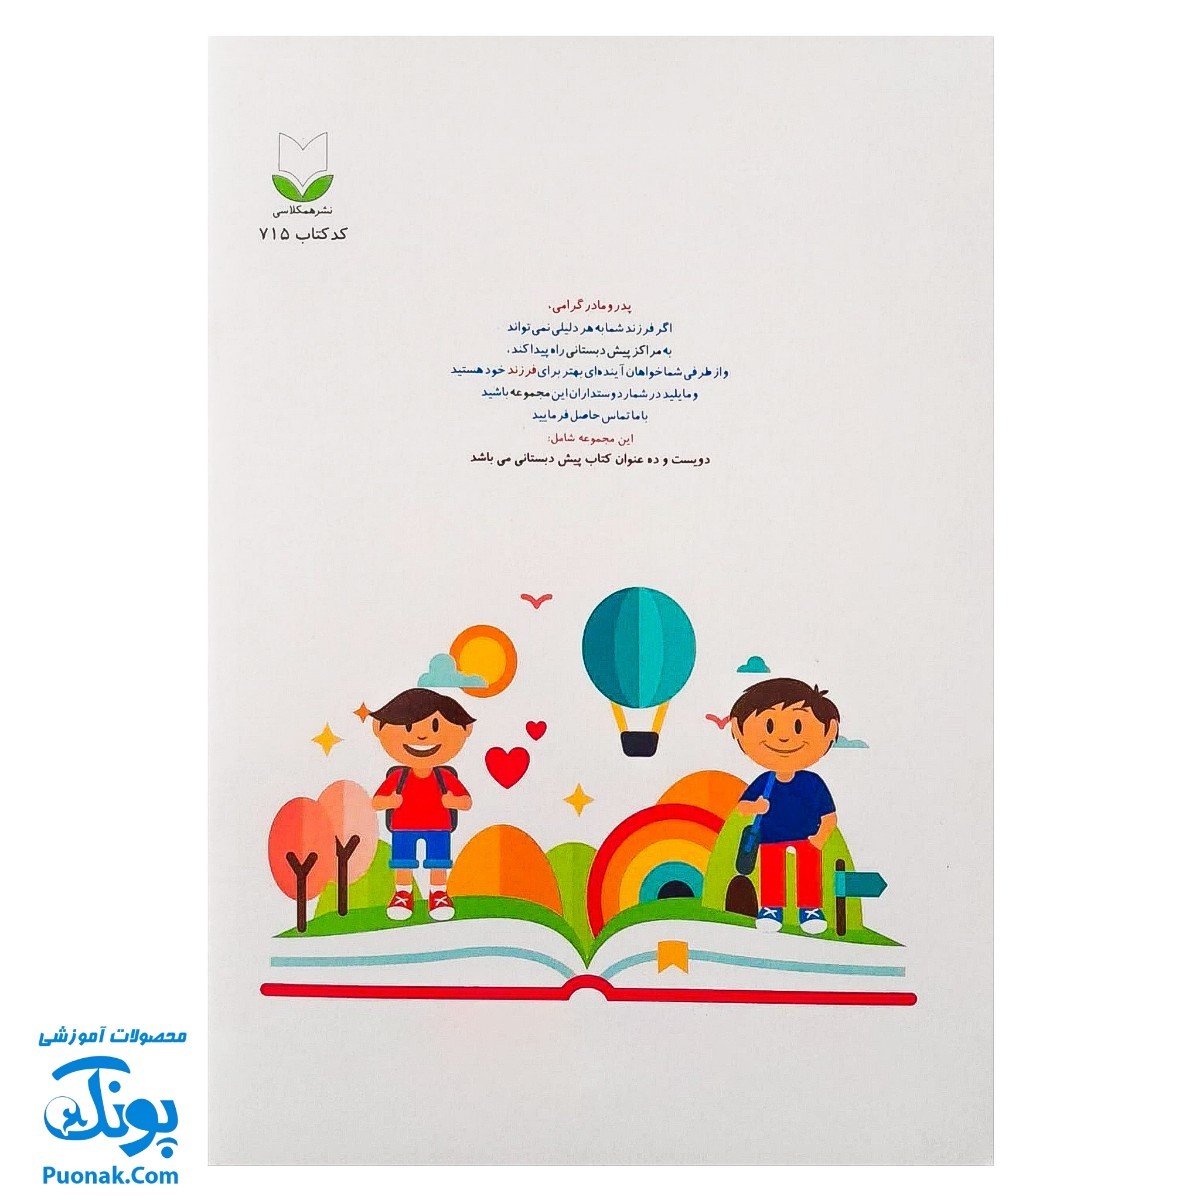 کتاب آموزشی آشنایی با مفاهیم ساده (مجموعه کتابهای آموزش غیر مستقیم برای کودکان پیش از دبستان)